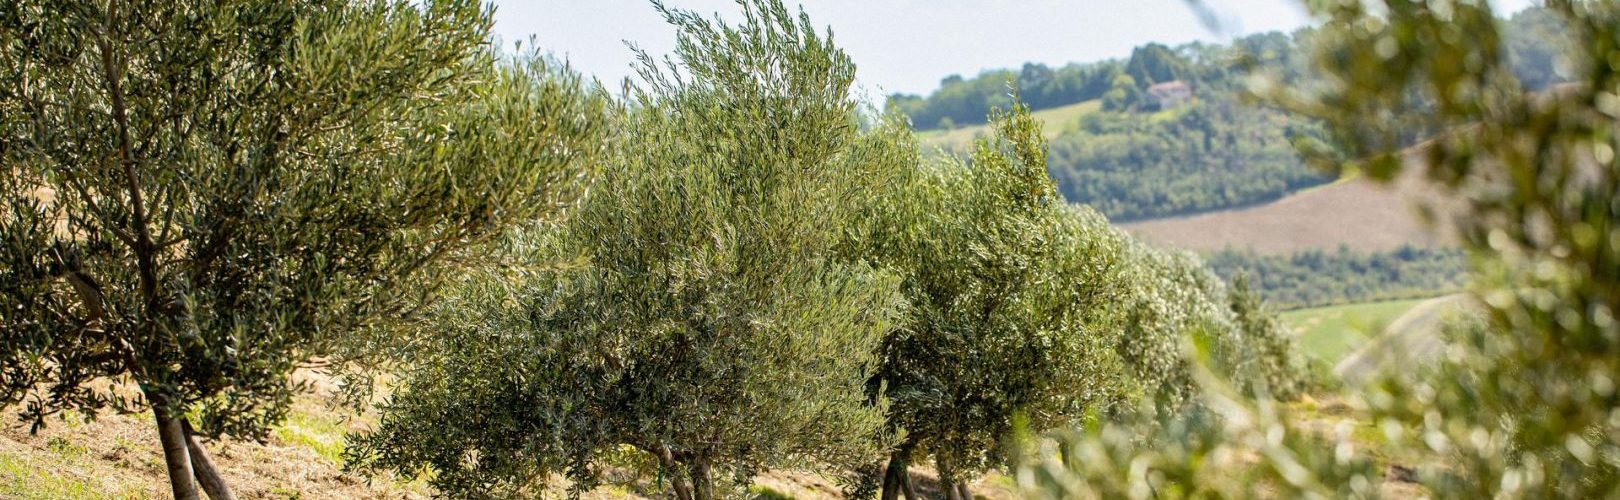 adotta un olivo